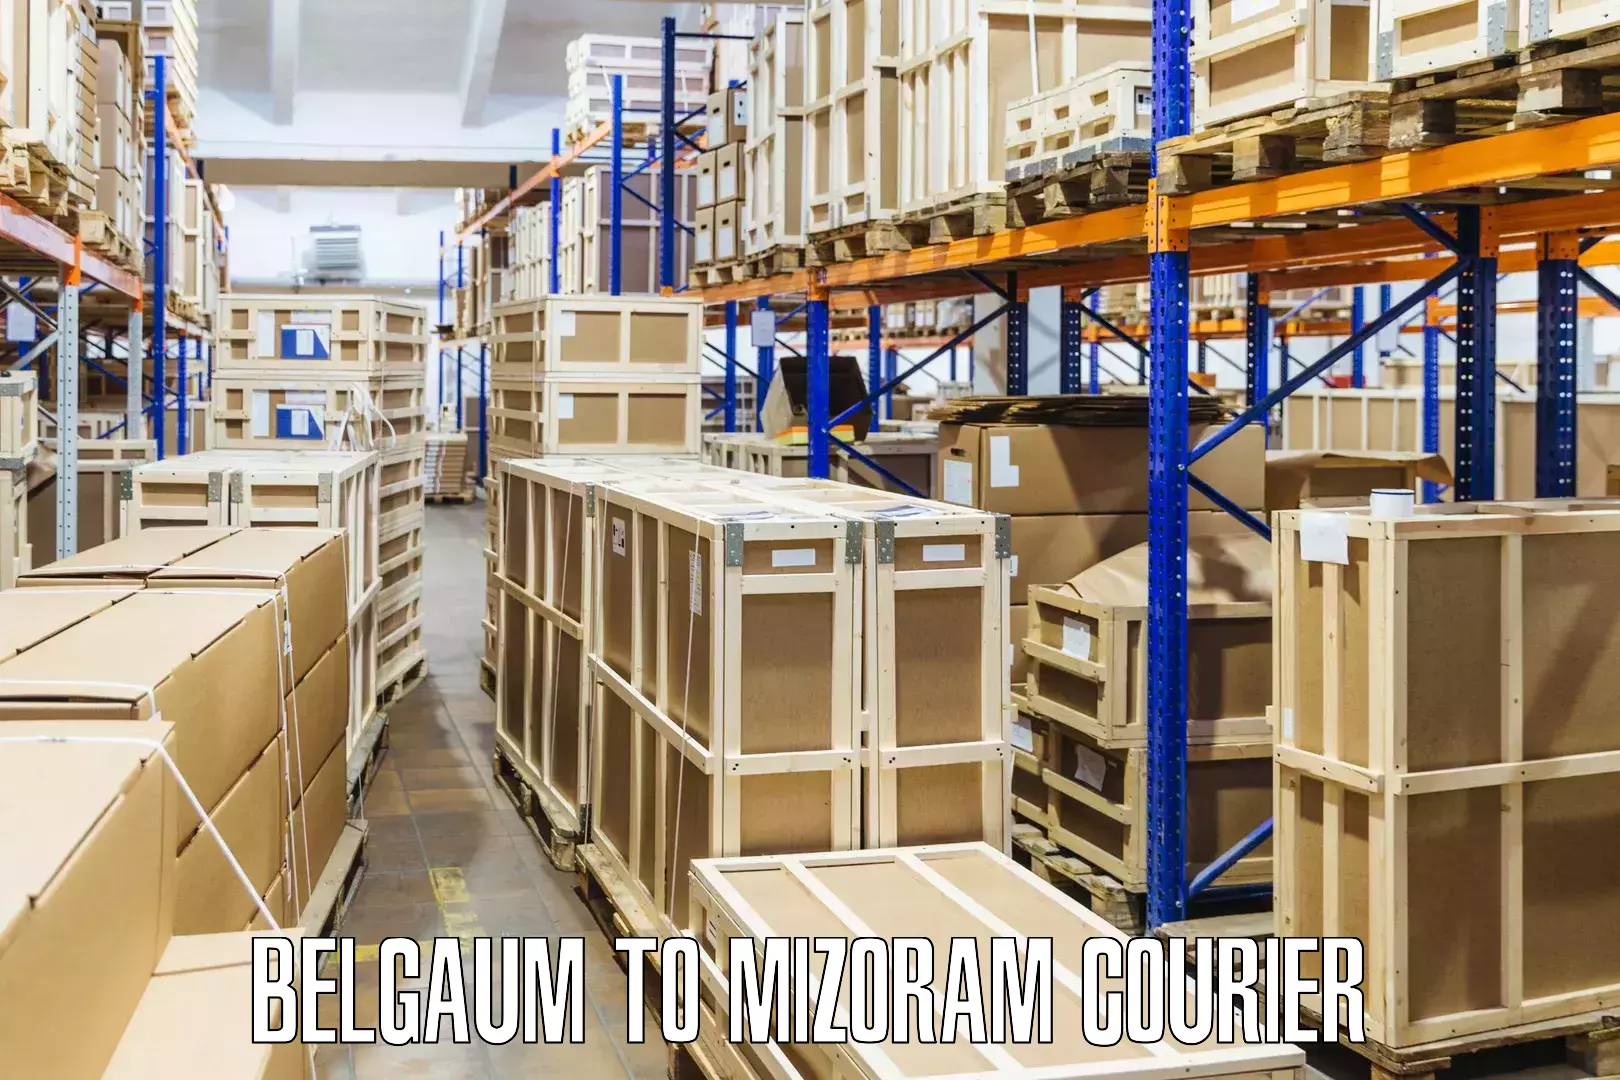 Affordable parcel service Belgaum to Khawzawl